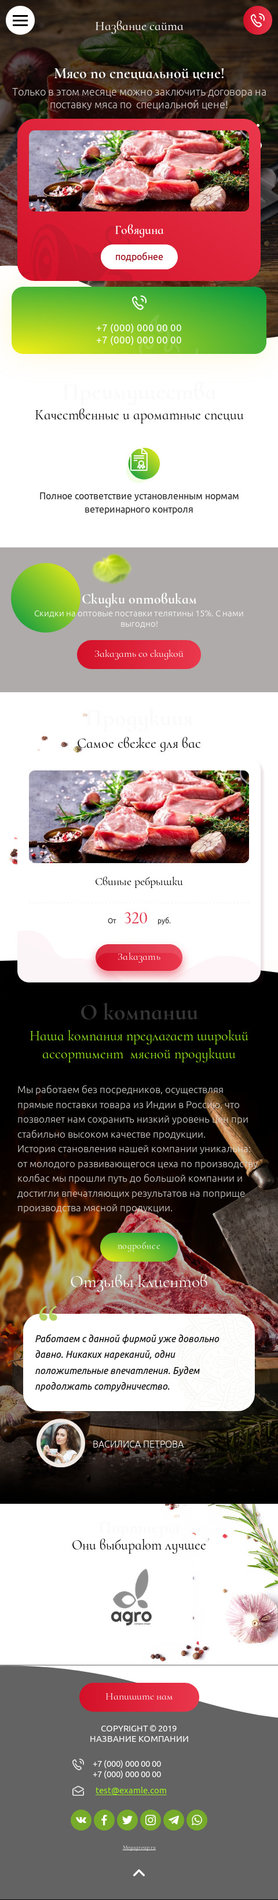 Готовый Сайт-Бизнес № 2468528 - Мясо и мясопродукты (Мобильная версия)